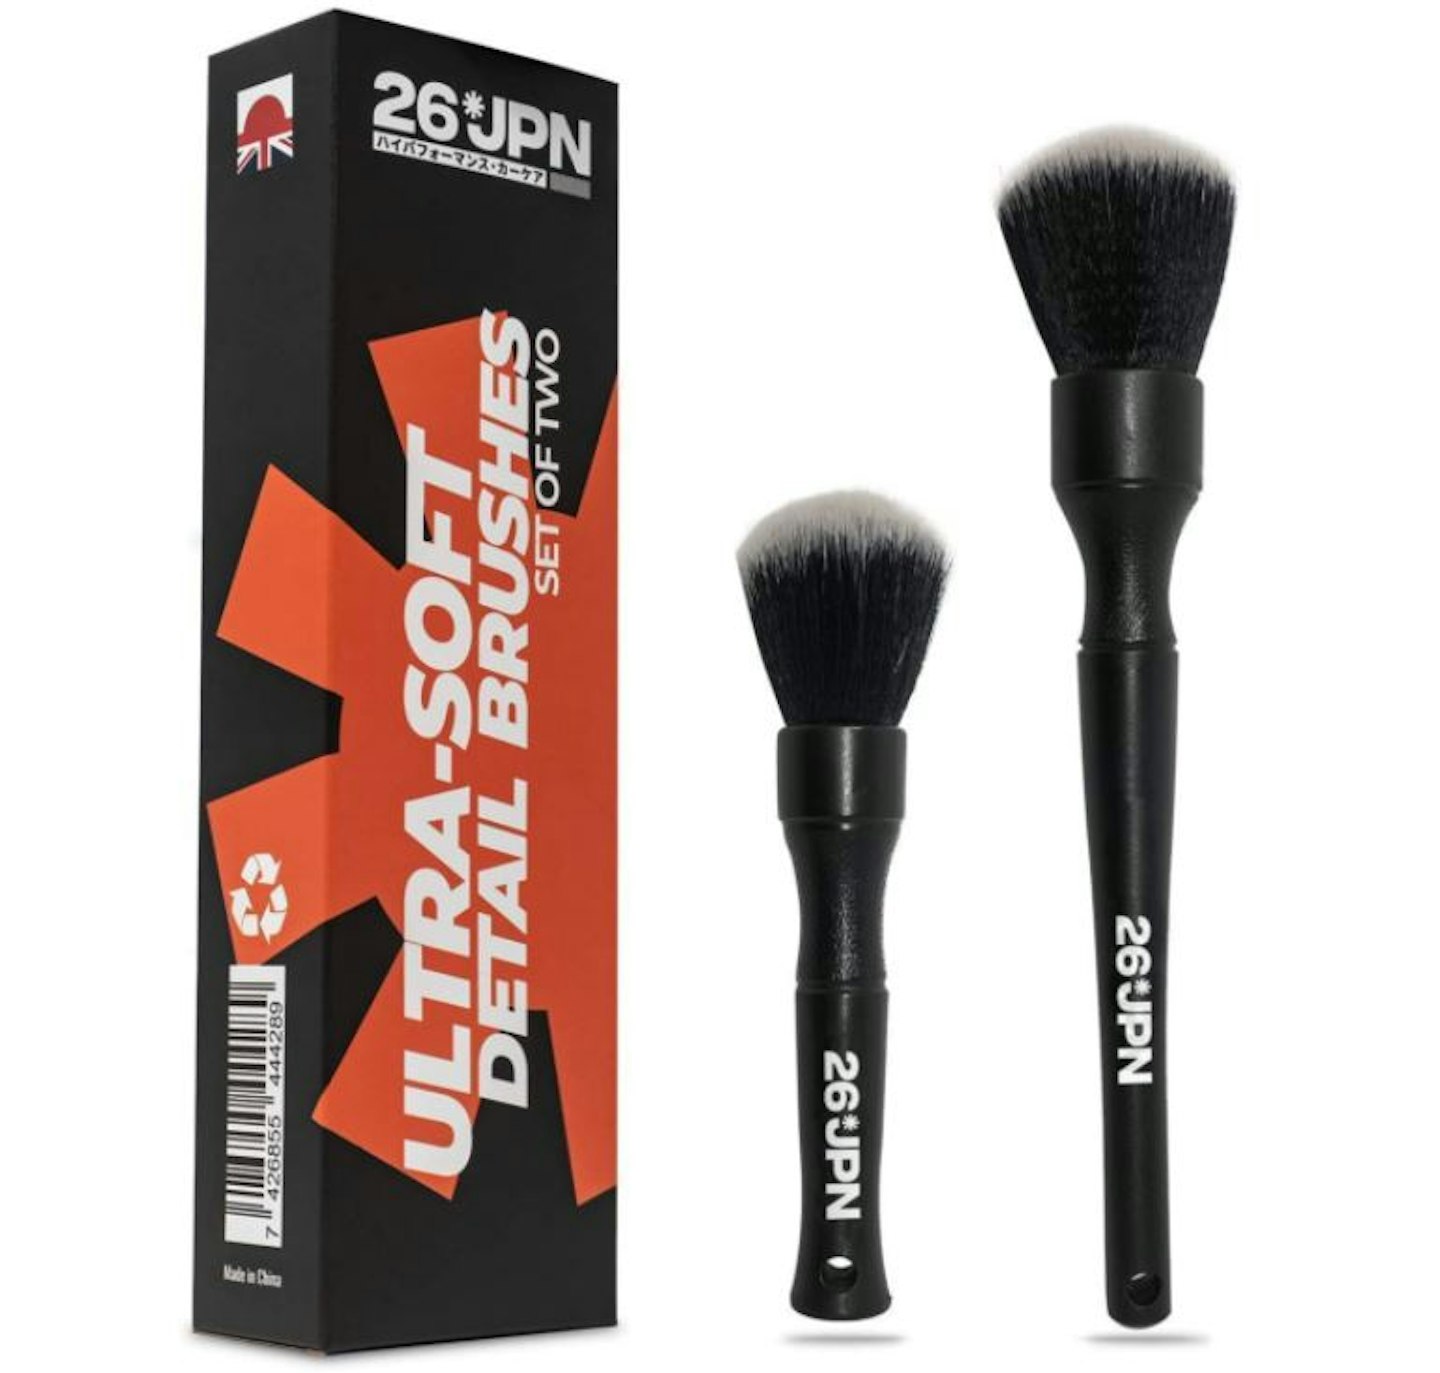 26JPN Ultra-Soft Detail Brushes